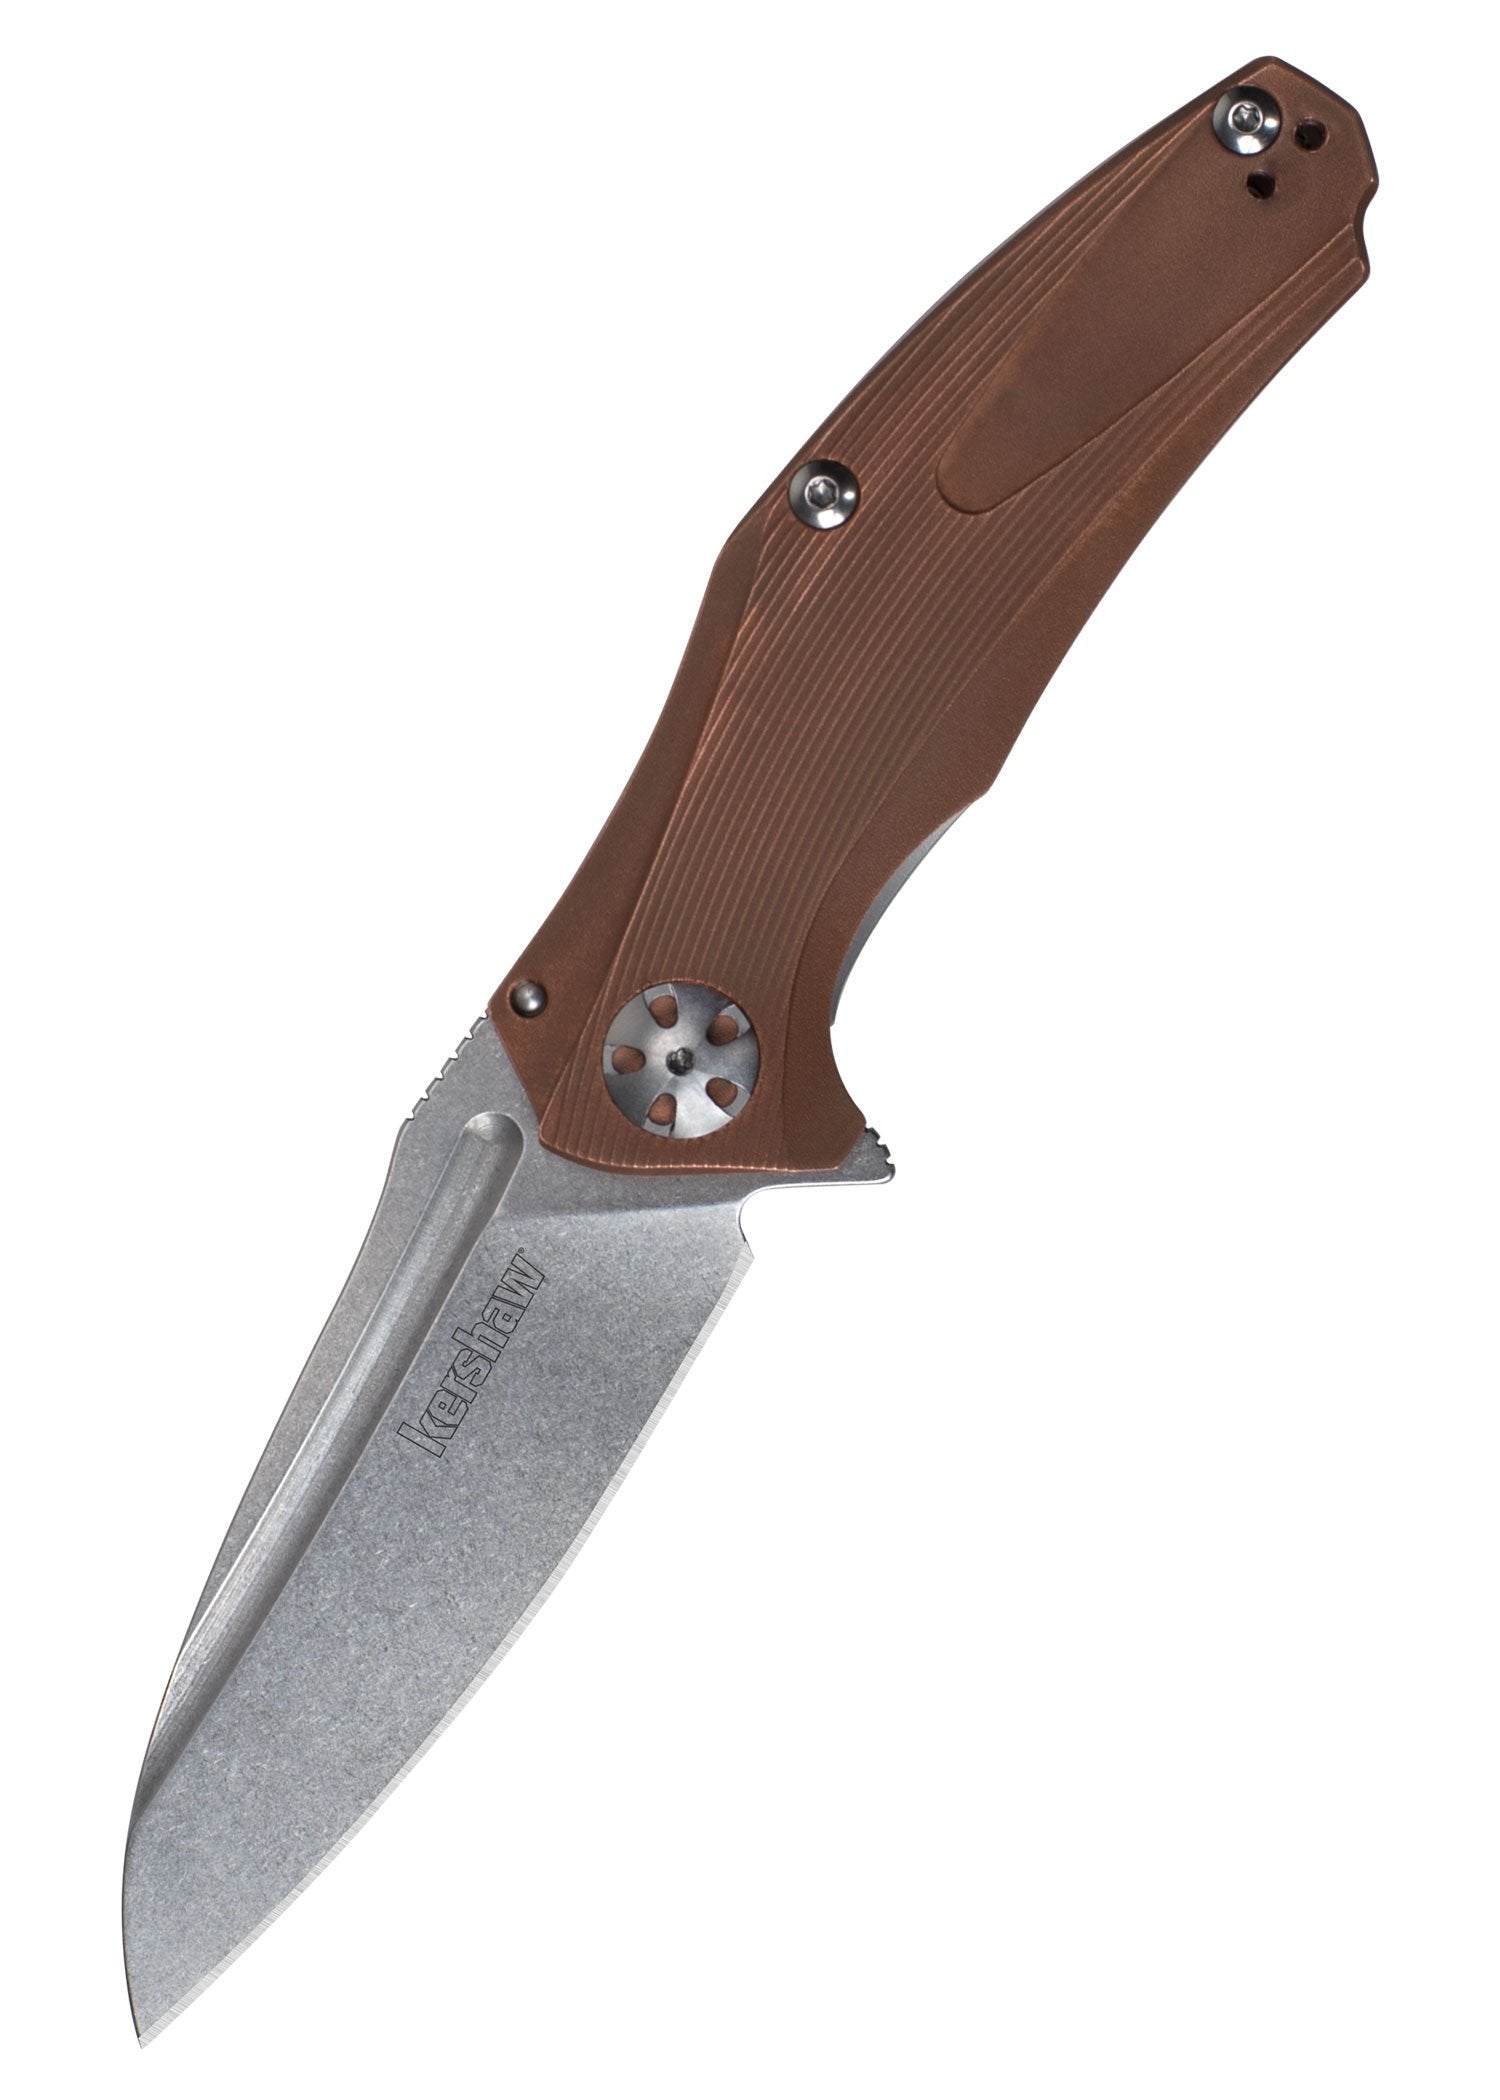 Kershaw 7006 Natrix Copper Copper Folding Knife